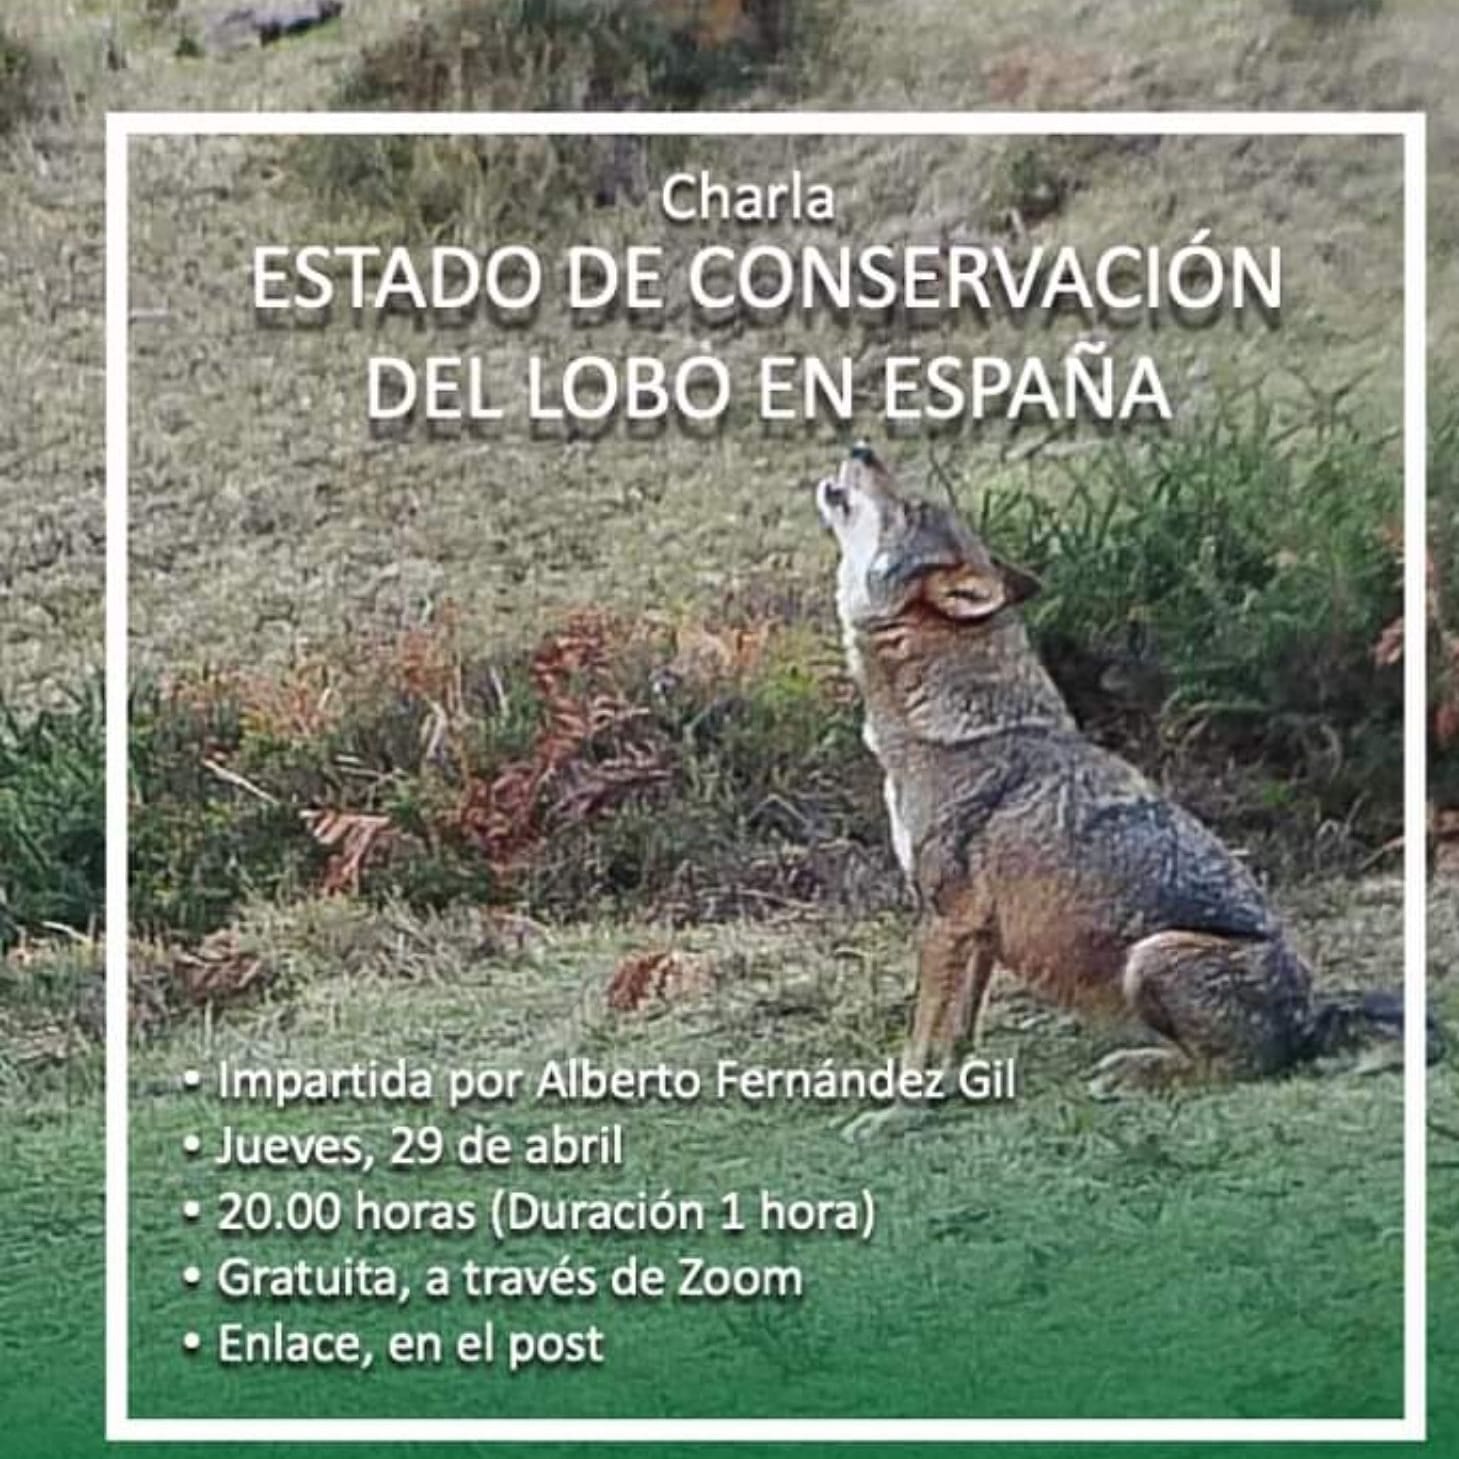 Charla sobre conservación del lobo en España, con la Fundación Oso de Asturias